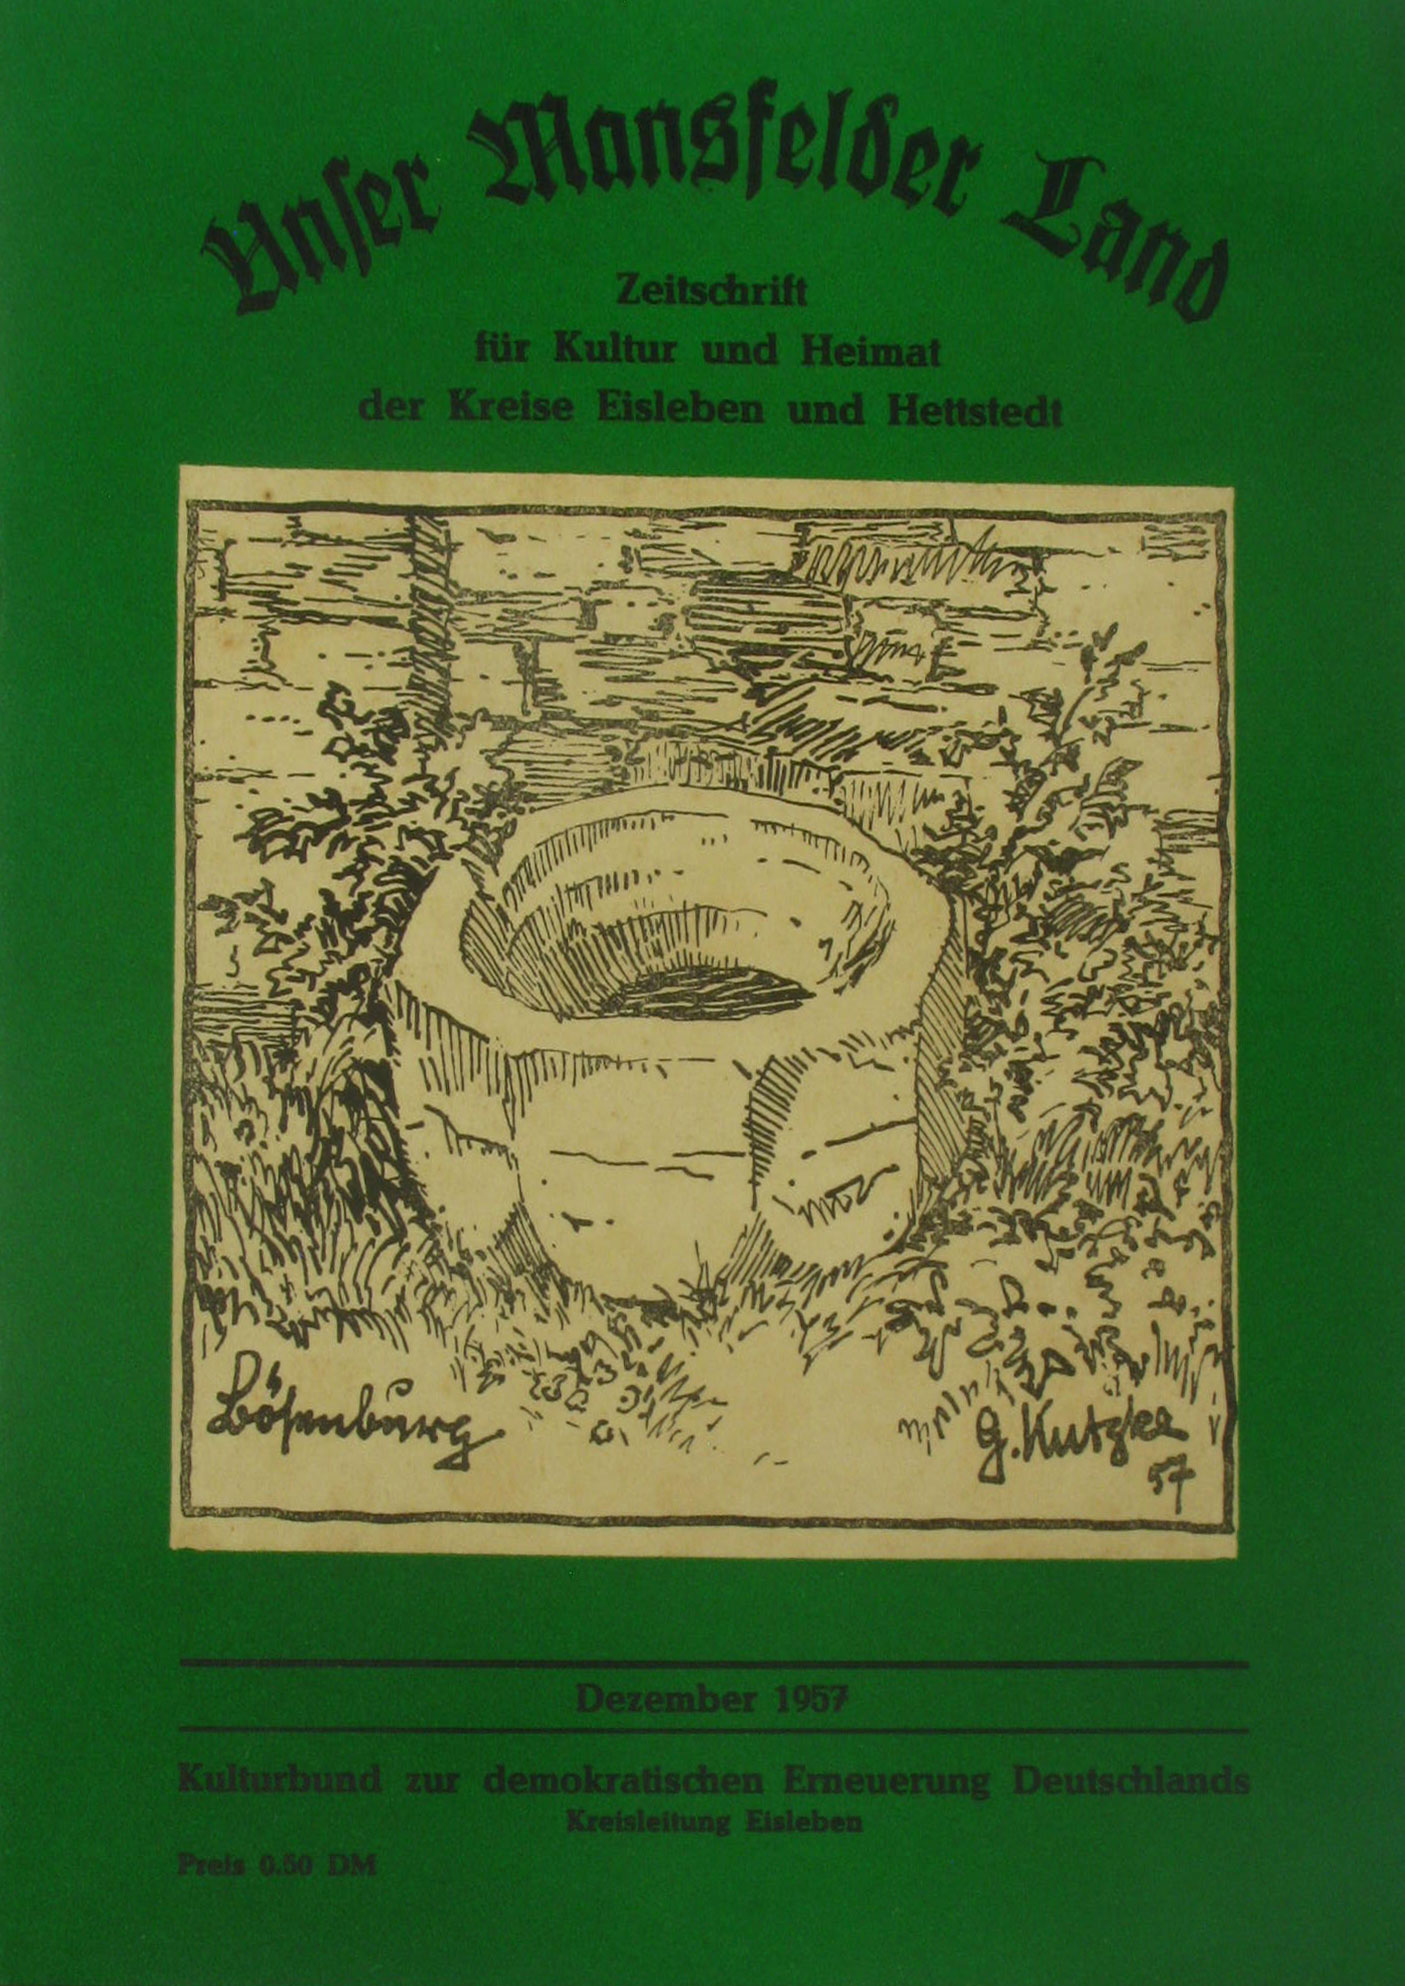 Autorenkollektiv:  Unser Mansfelder Land. Zeitschrift für Kultur und Heimat der Kreise Eisleben und Hettstedt (Dezember 1957) 